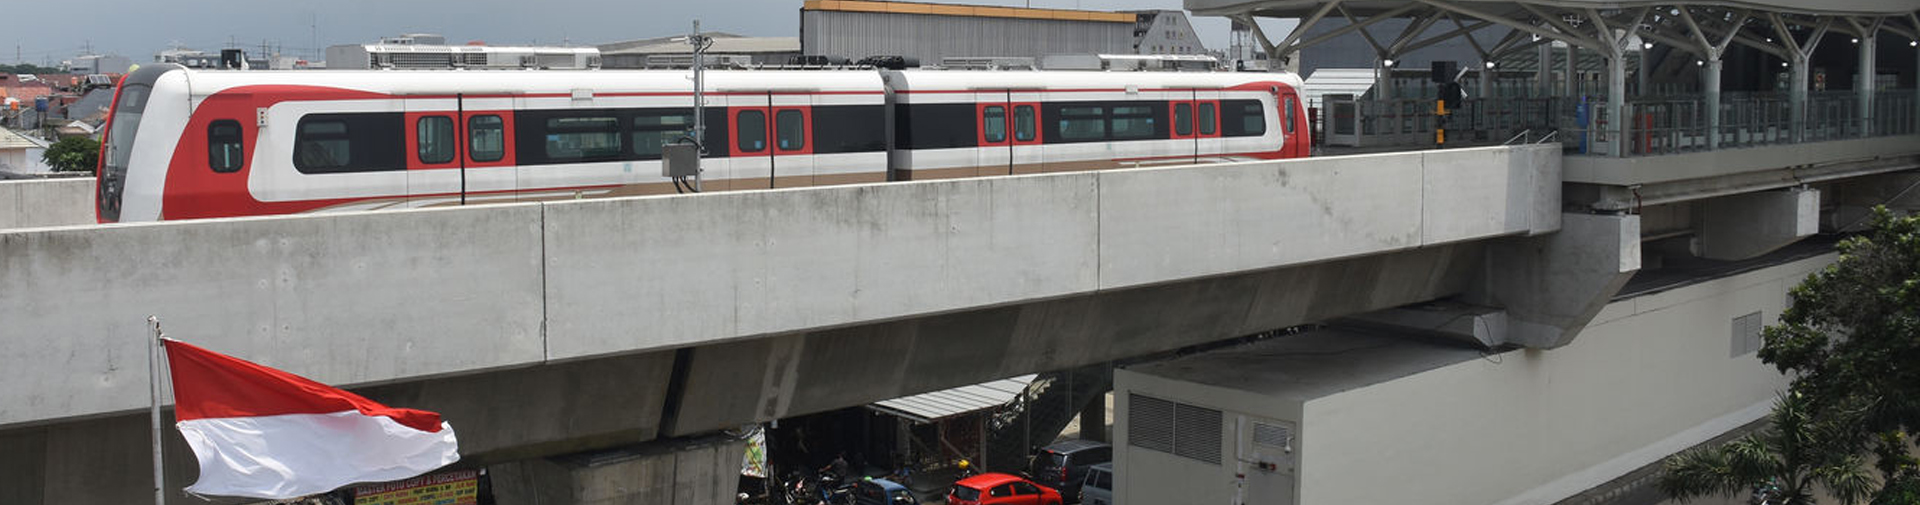 5 Facts of LRT Project Development in Jakarta